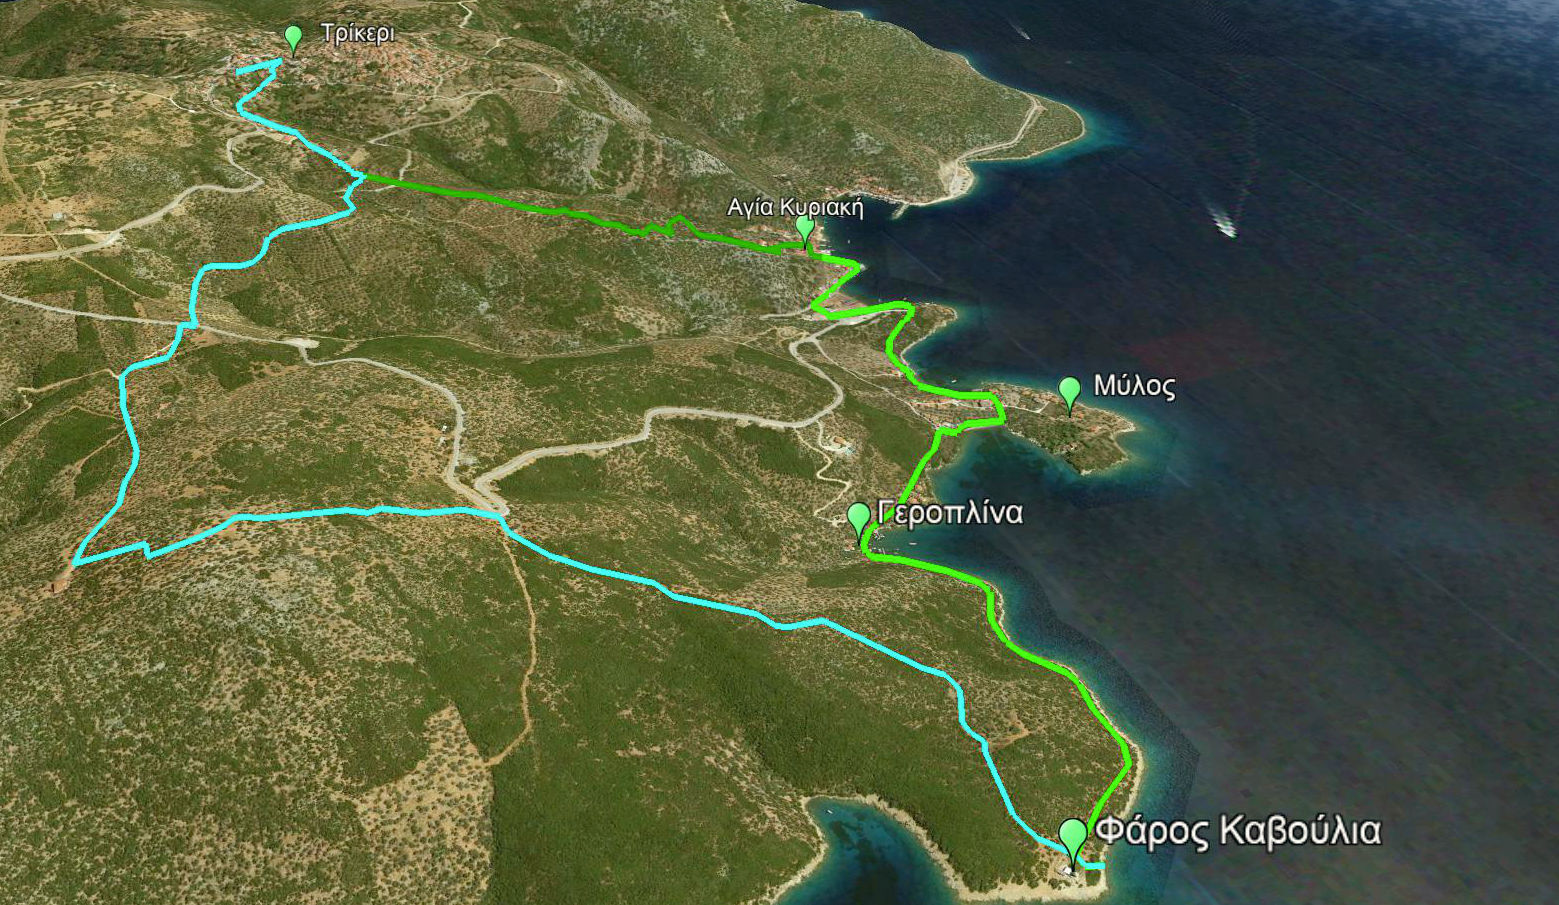 Νότιο Πήλιο topoguide: Διαδρομή Τρίκερι-Φάρος Καβούλια